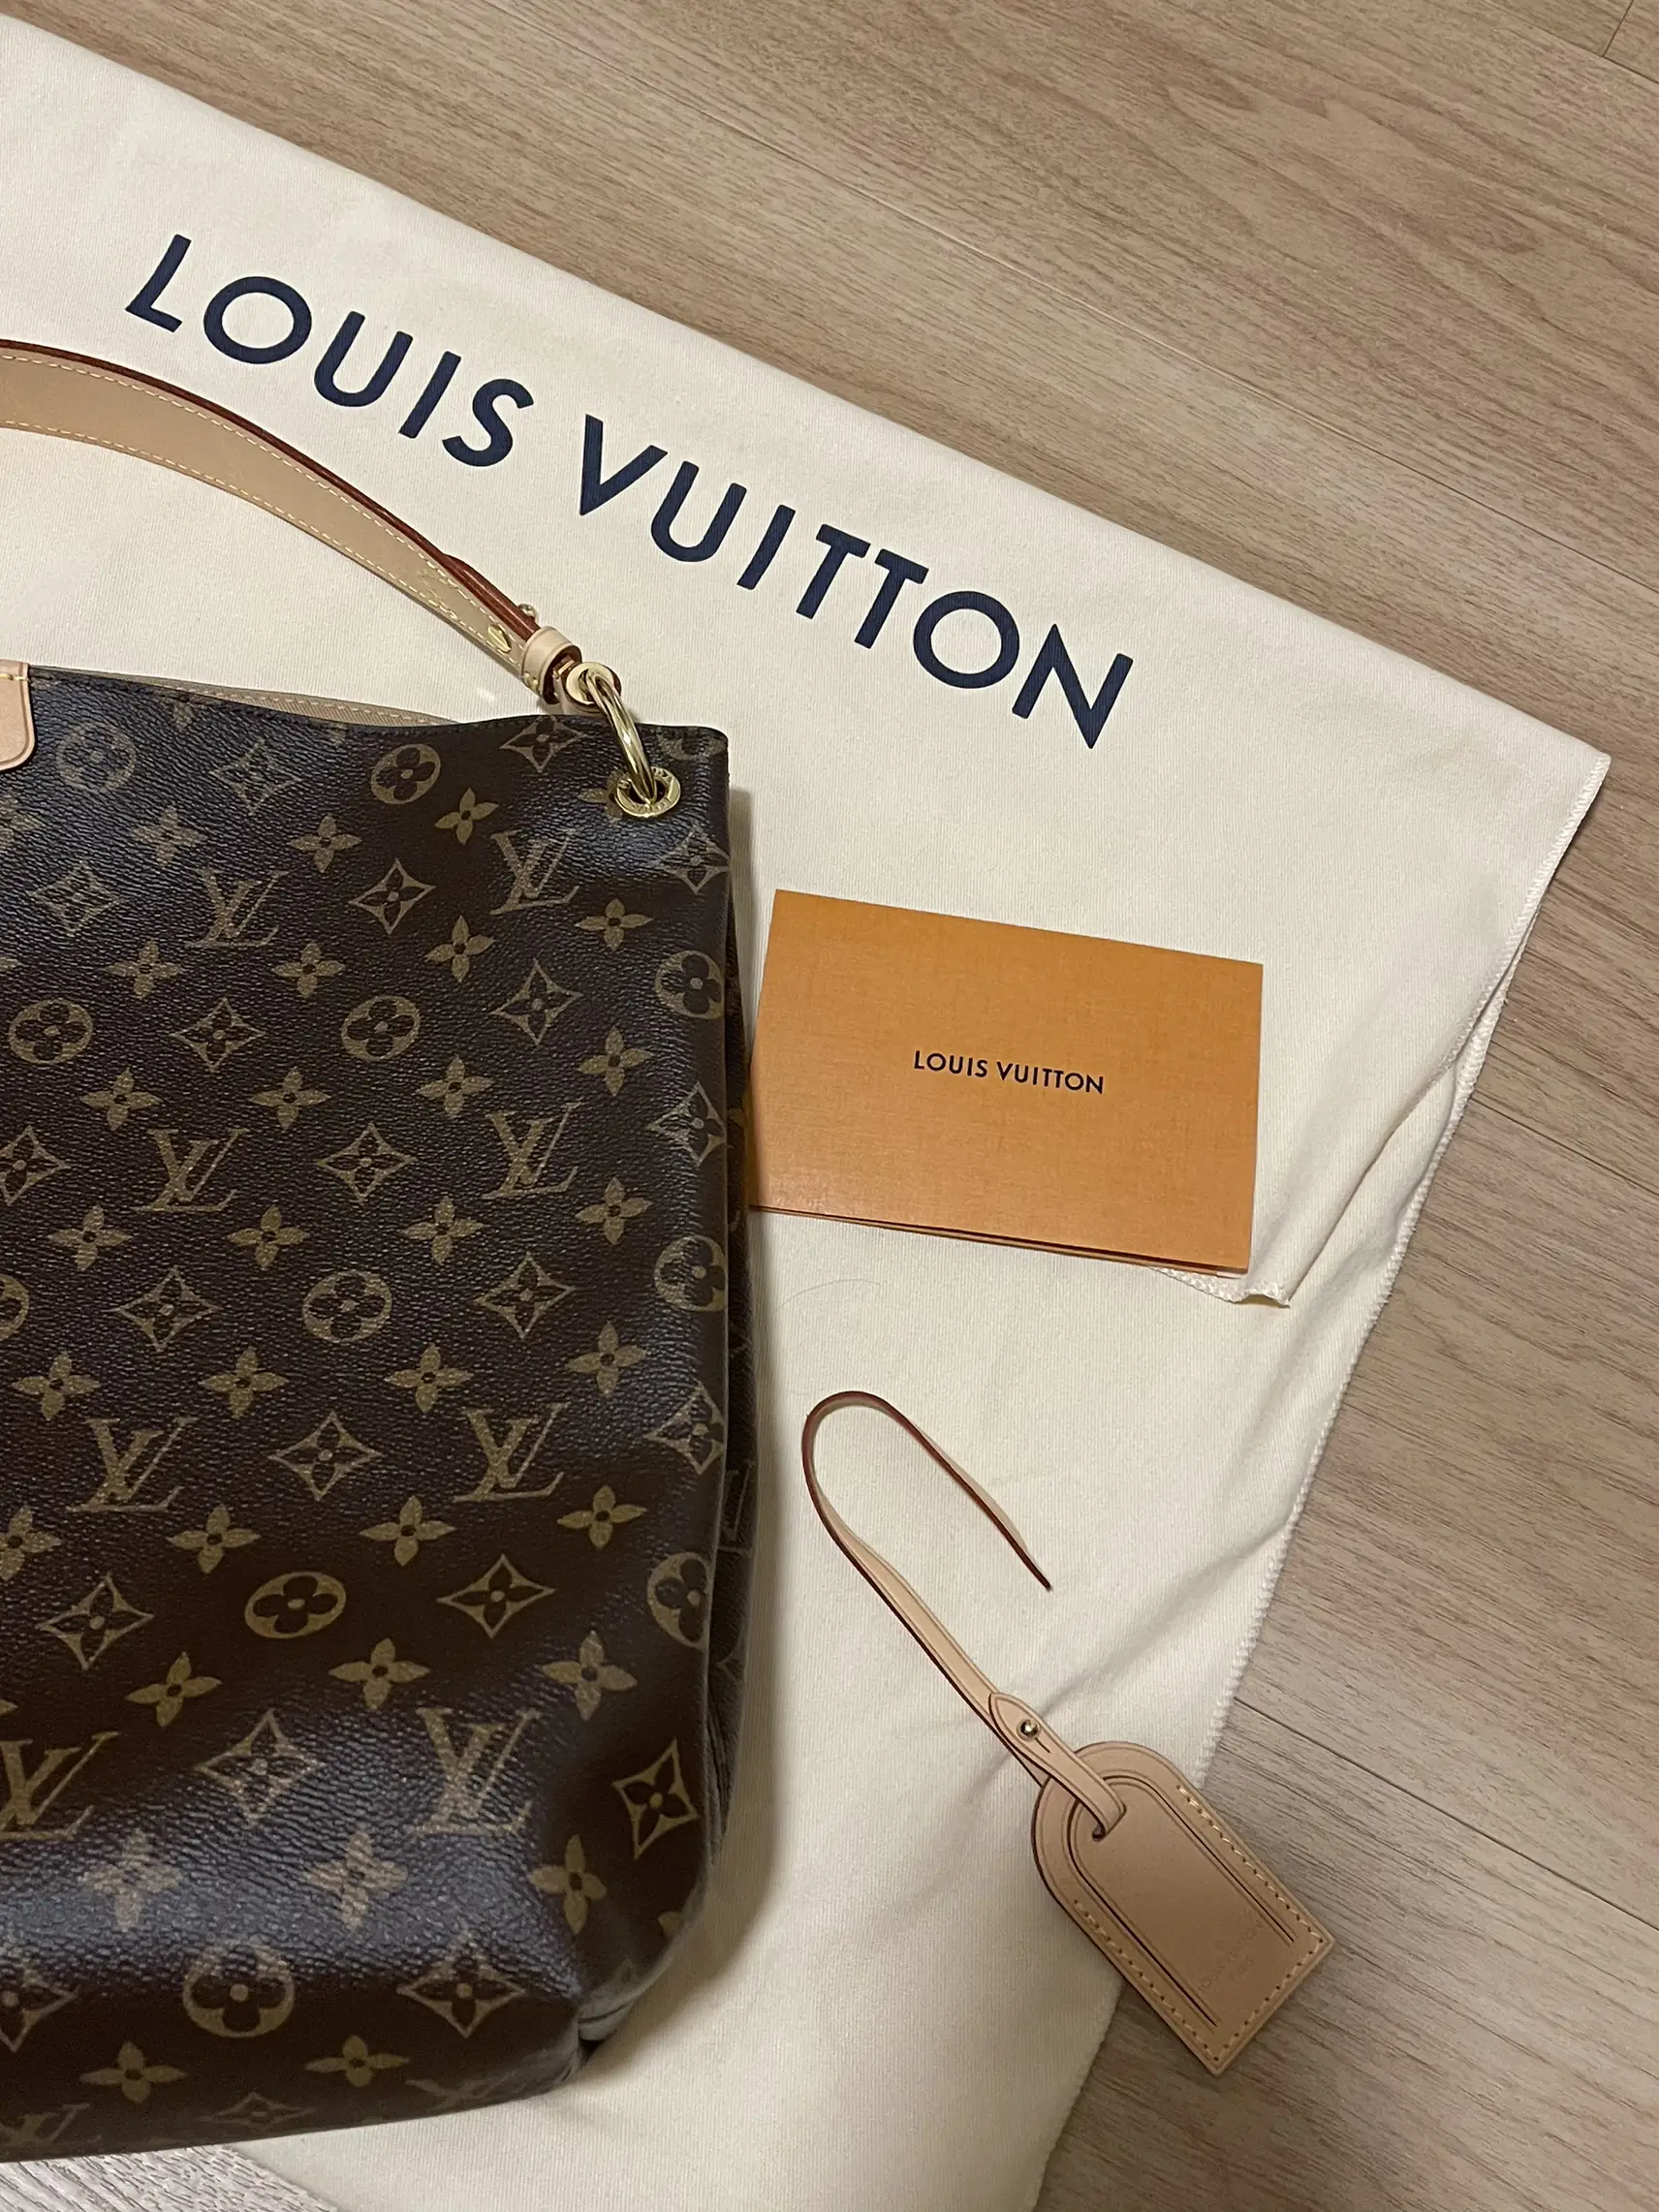 HONEST Louis Vuitton Graceful MM Review!  Louis vuitton outfit, Louis  vuitton, Louis vuitton store